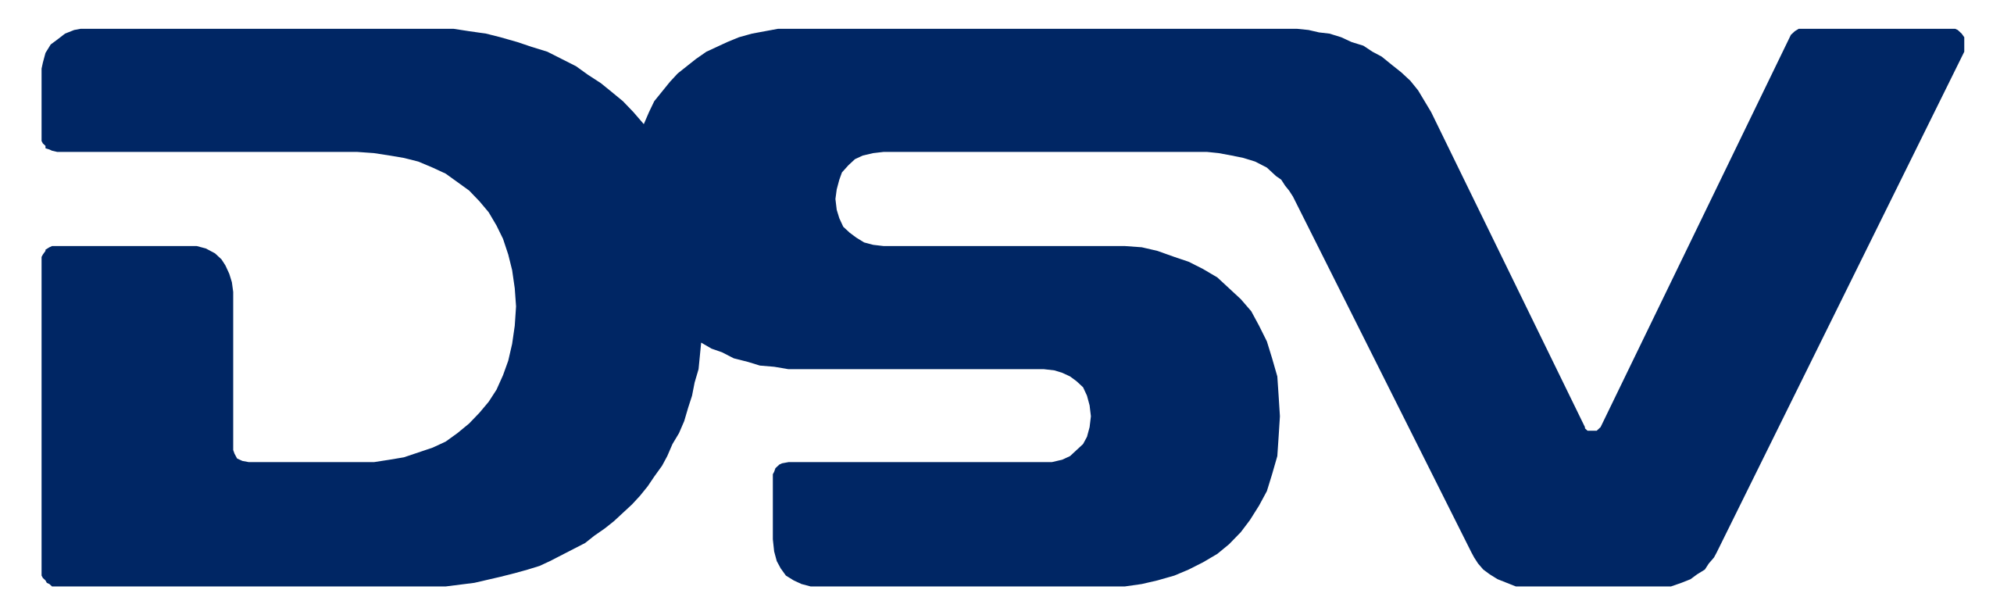 2560px-DSV_Logo.svg